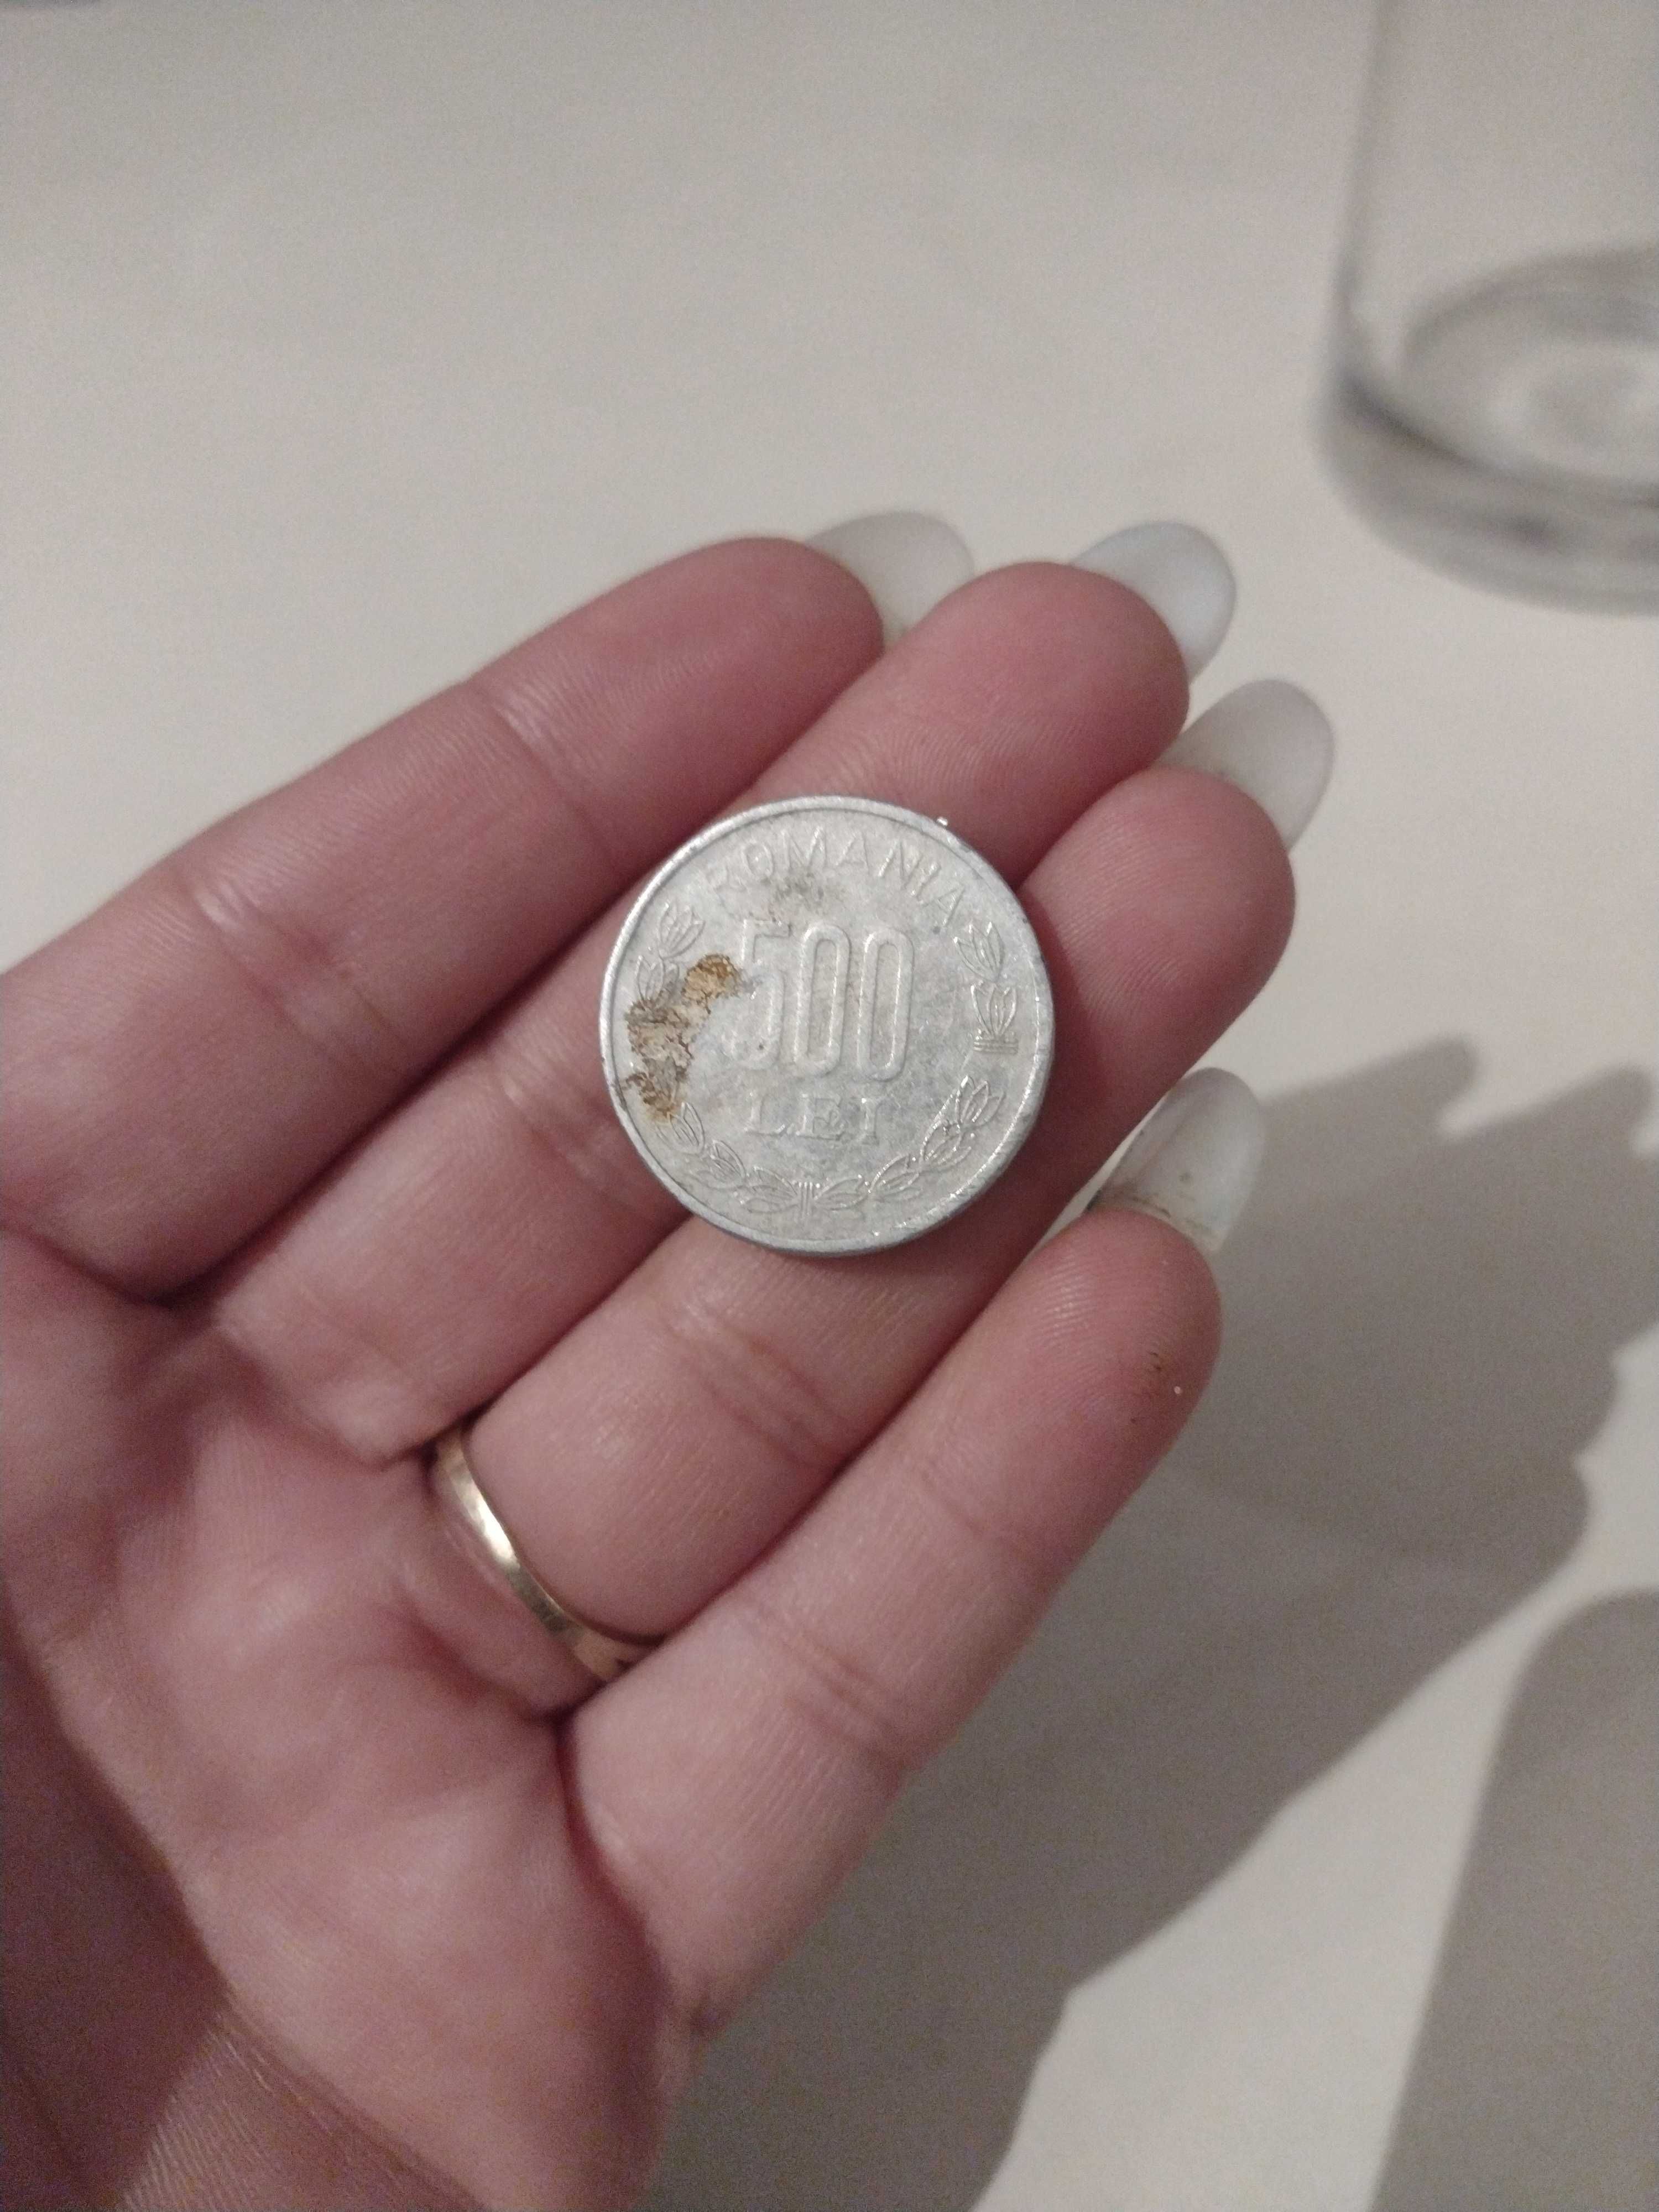 Vând monedă veche.. de 500 lei din 1999...cu prețul 500 de lei